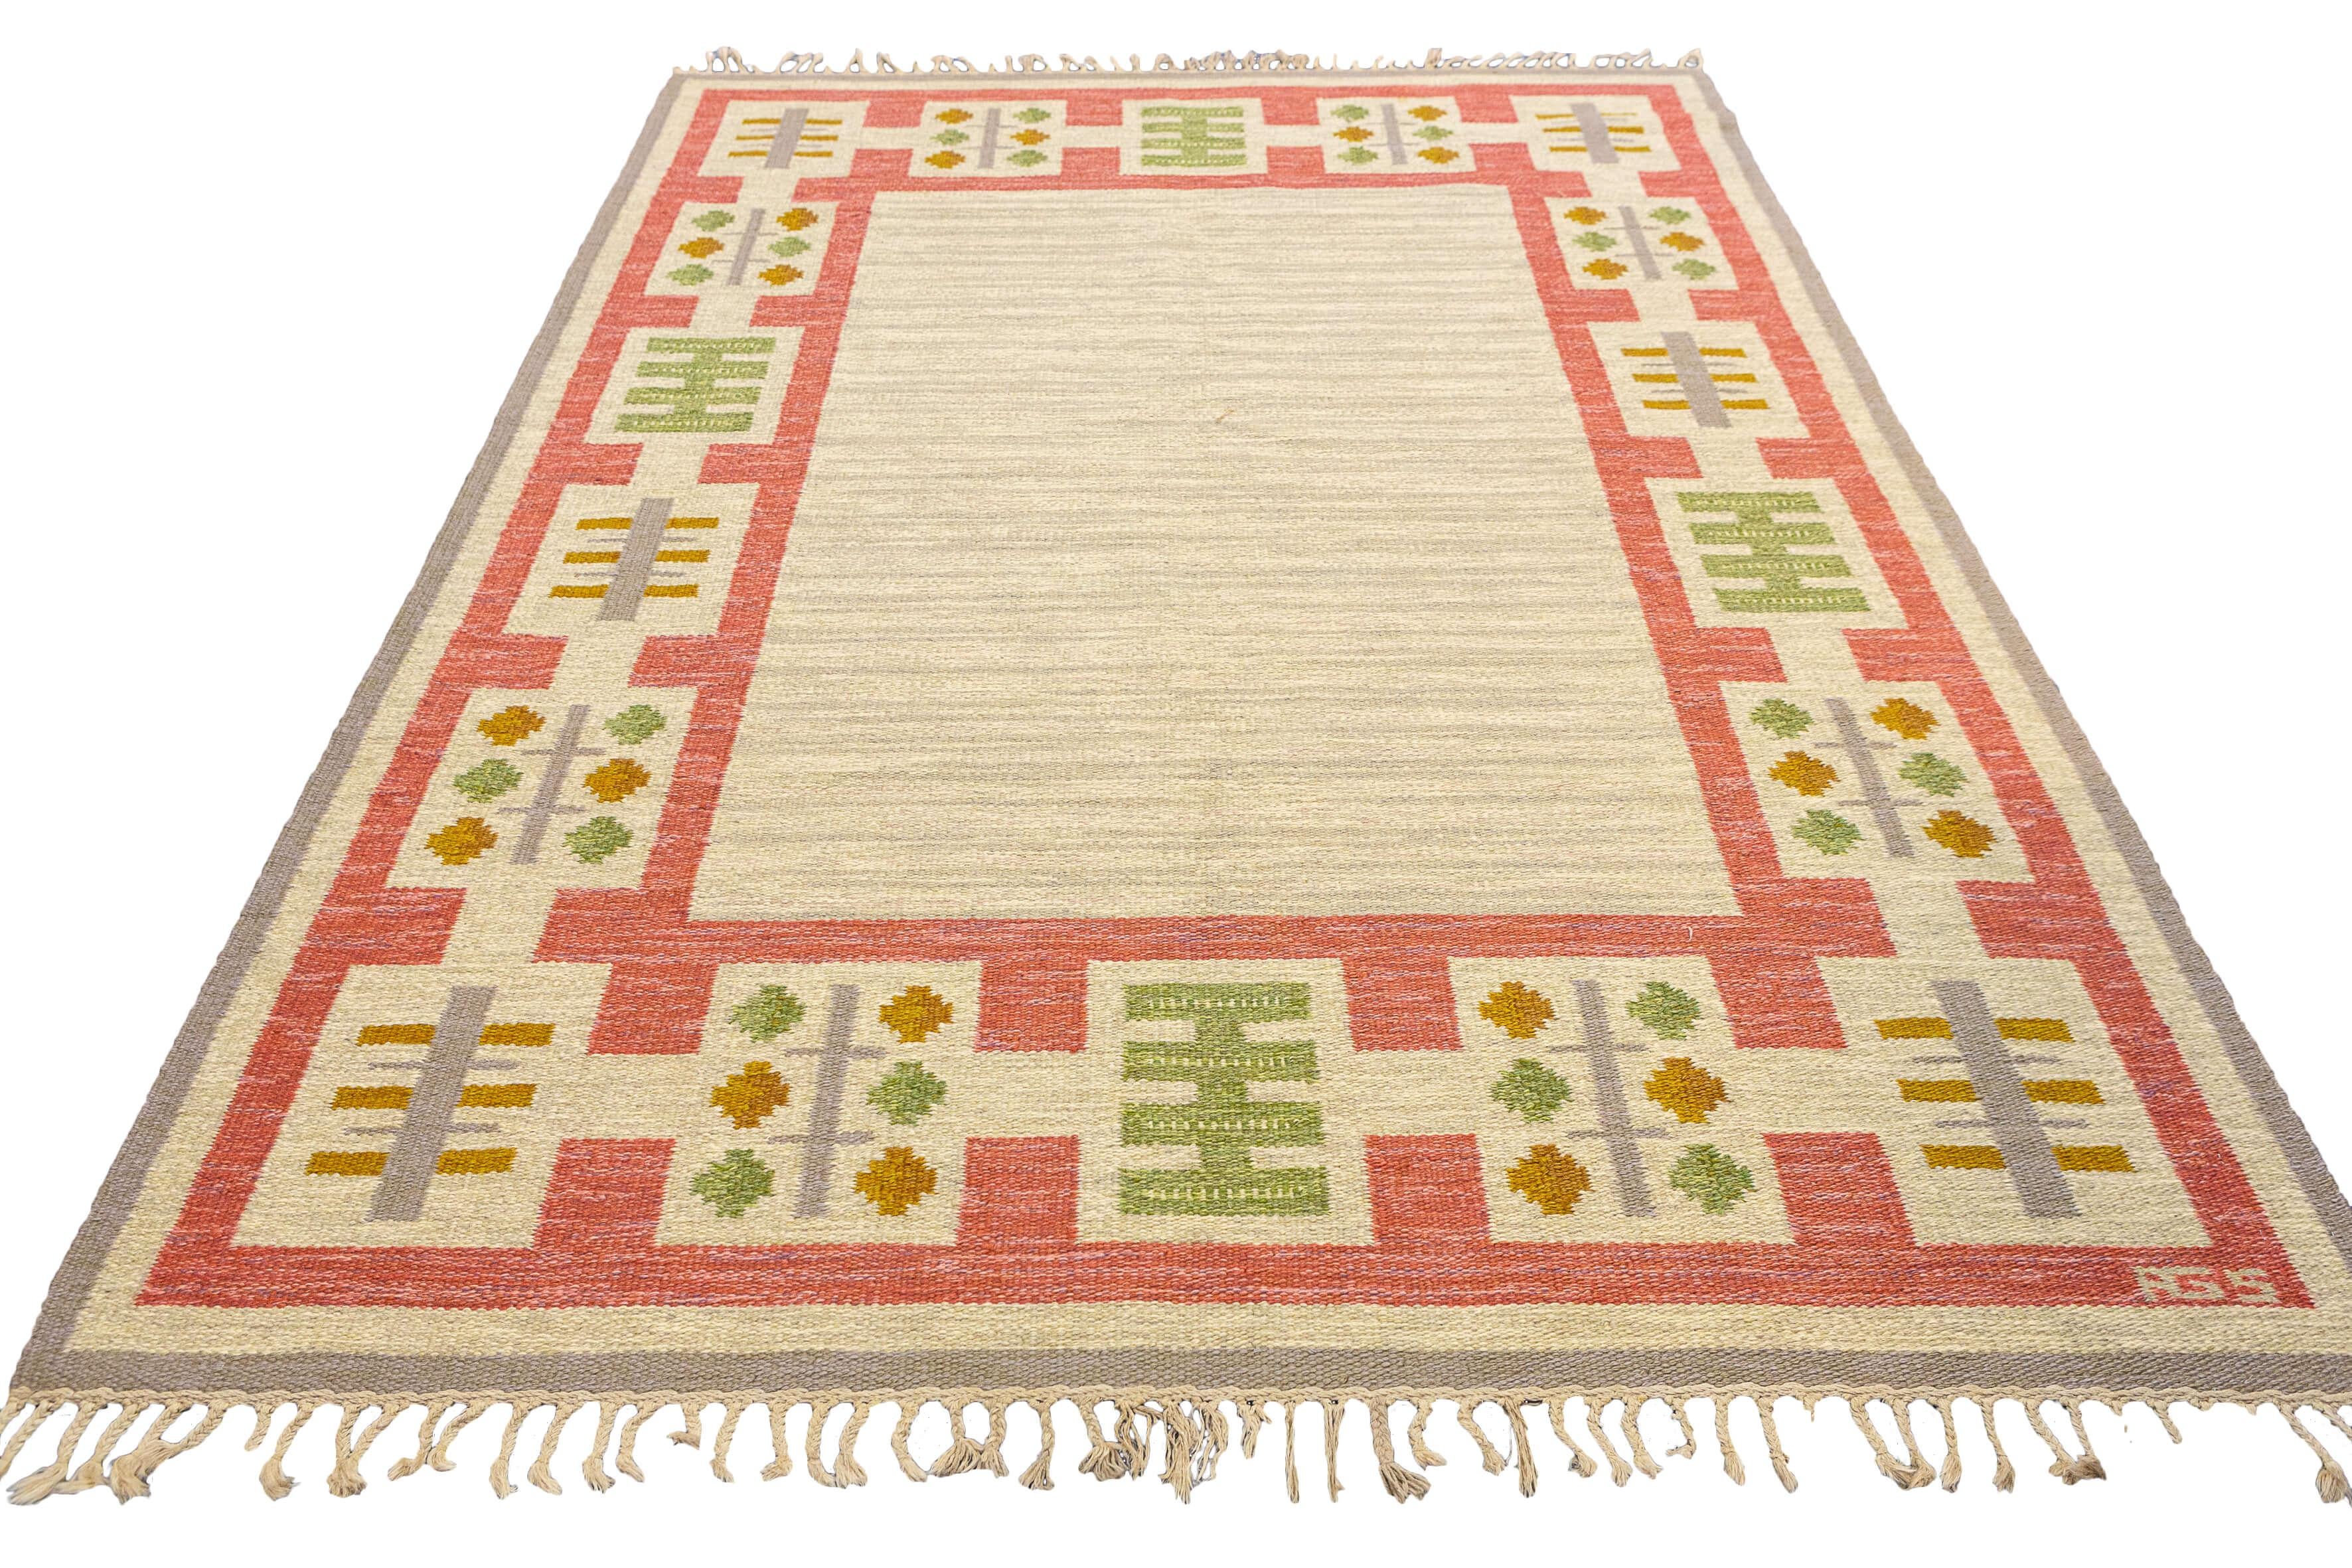 Dies ist ein interessanter skandinavischer Rollakan-Schwedenteppich in einer fesselnden Kombination aus Beige- und Rosatönen. Dieses exquisite Stück zeichnet sich durch sein unverwechselbares Design, seine außergewöhnliche Handwerkskunst und die